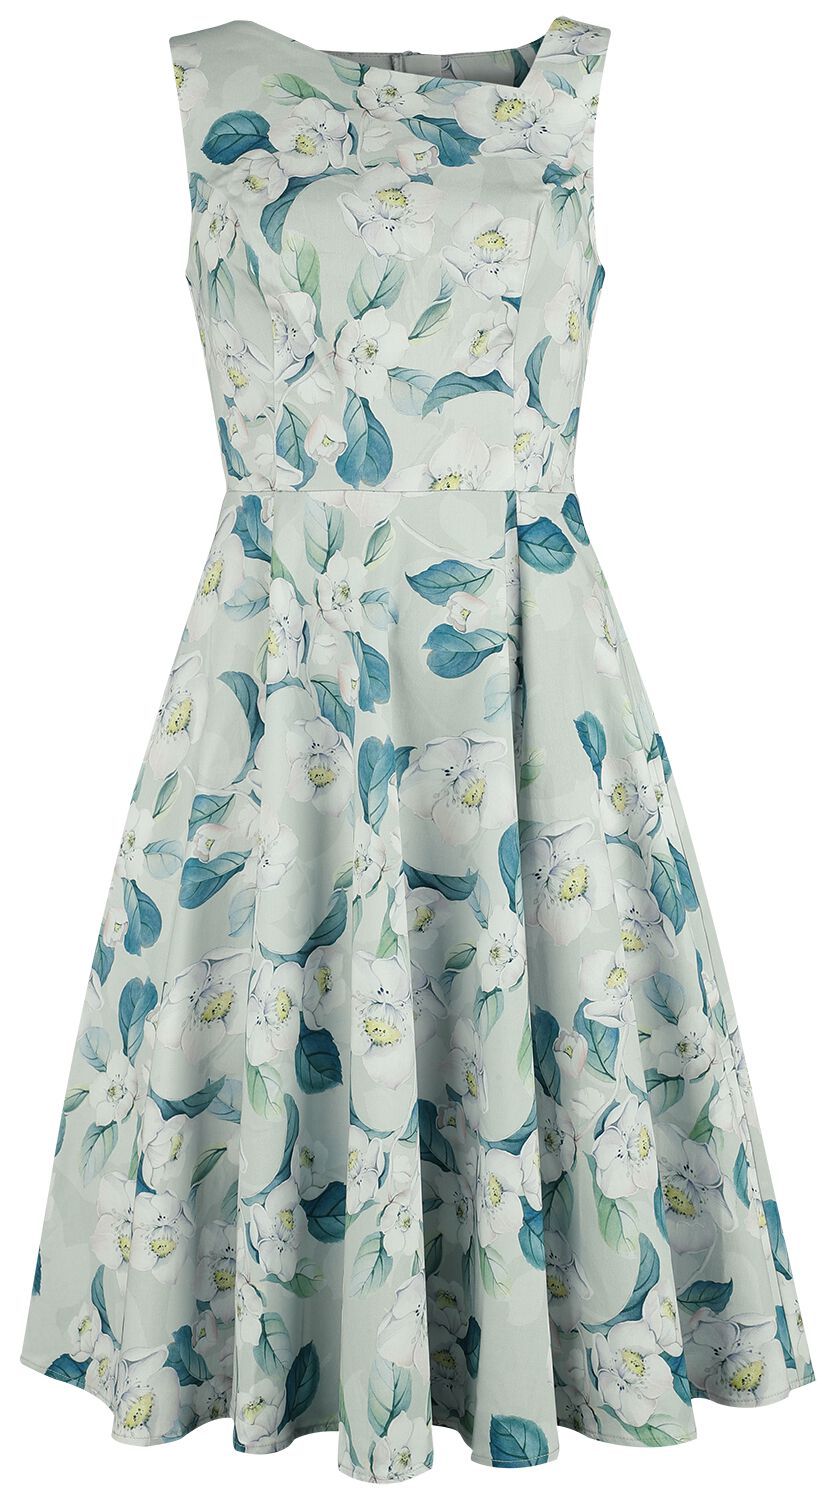 H&R London - Rockabilly Kleid knielang - Rey Floral Swing Dress - XS bis 4XL - für Damen - Größe M - grün/weiß